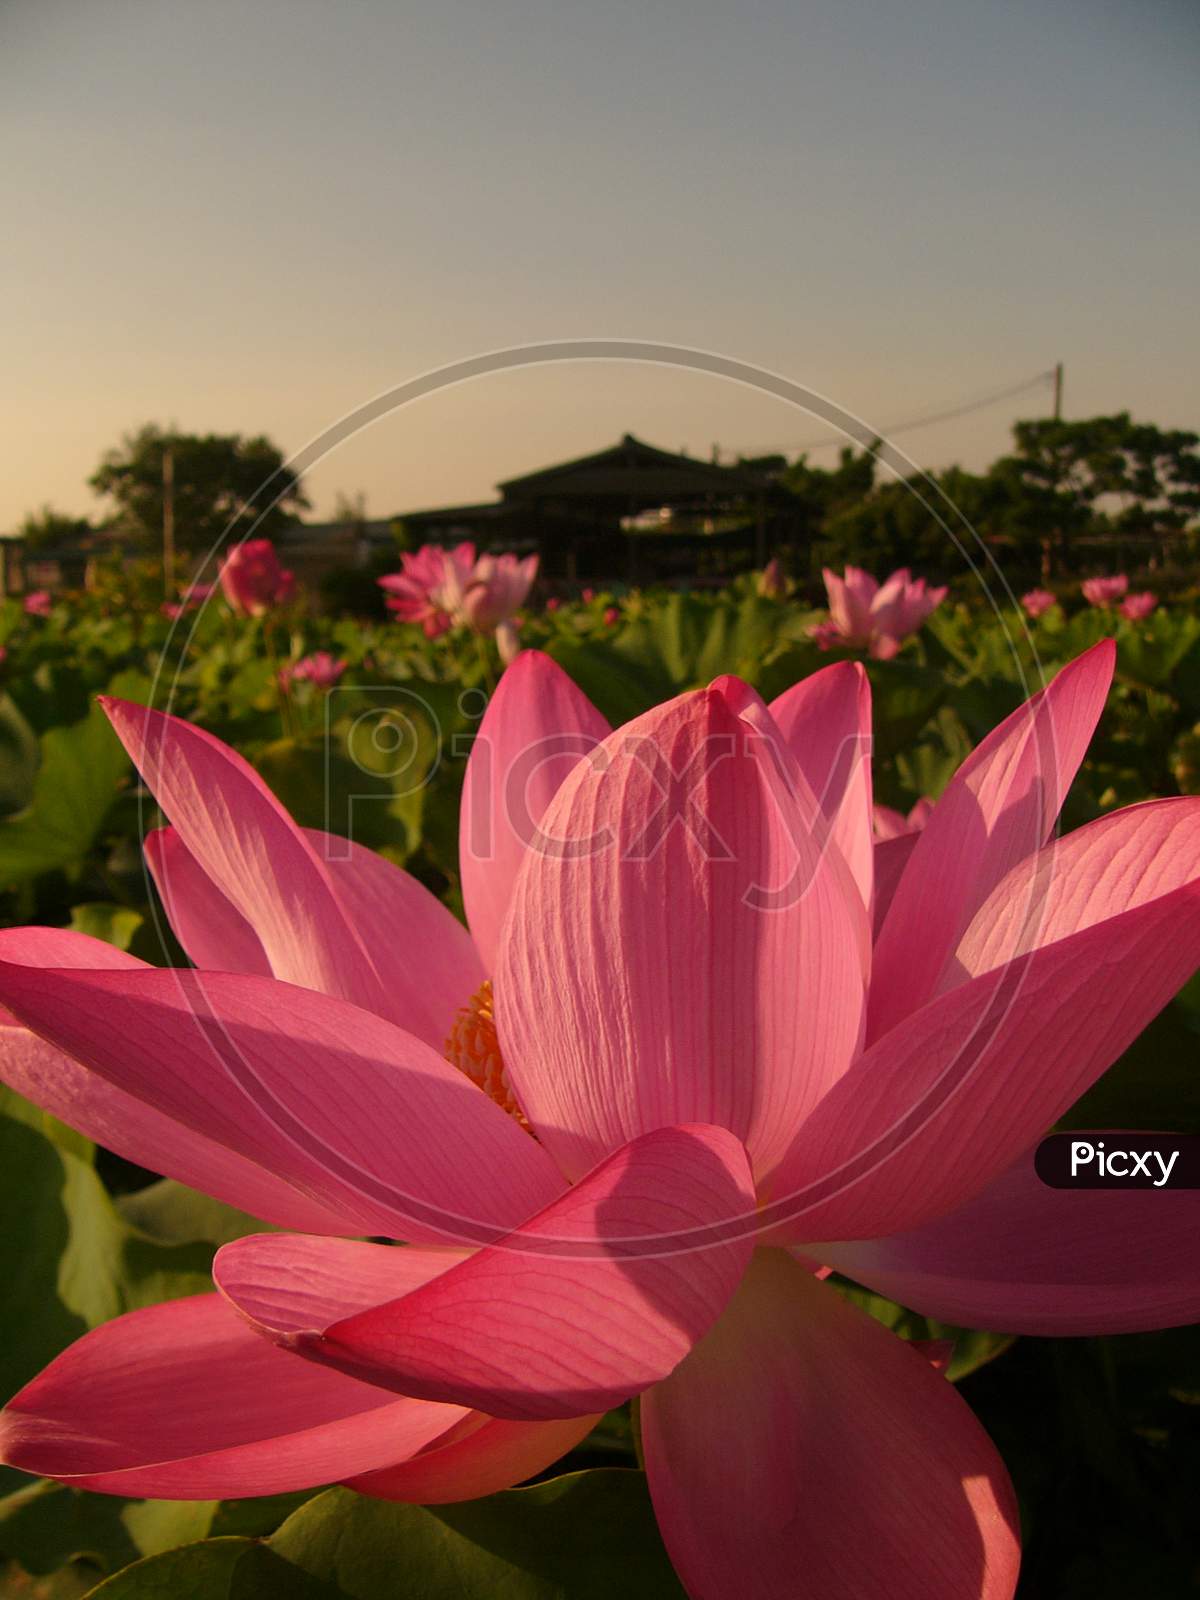 Holy and elegant lotus